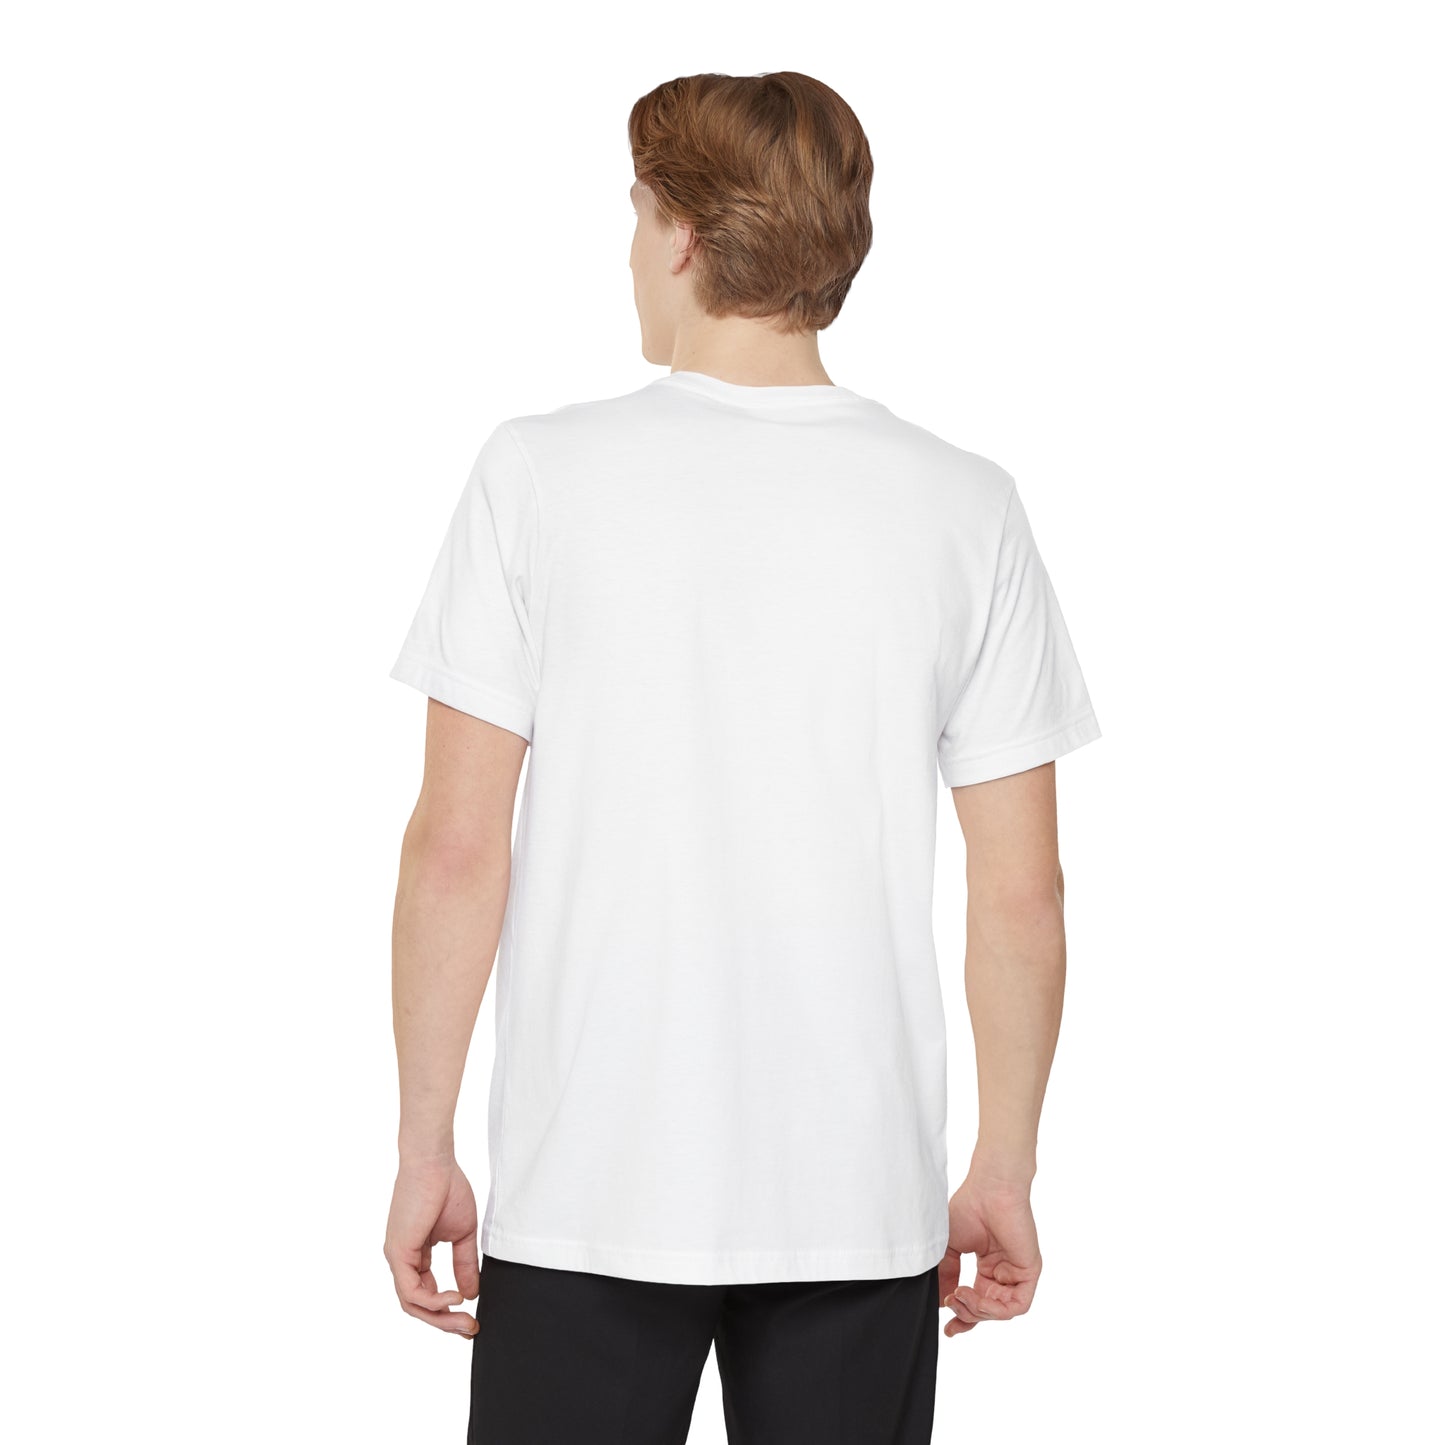 'Détroit Rocque Cité' Pocket T-Shirt | Unisex Standard